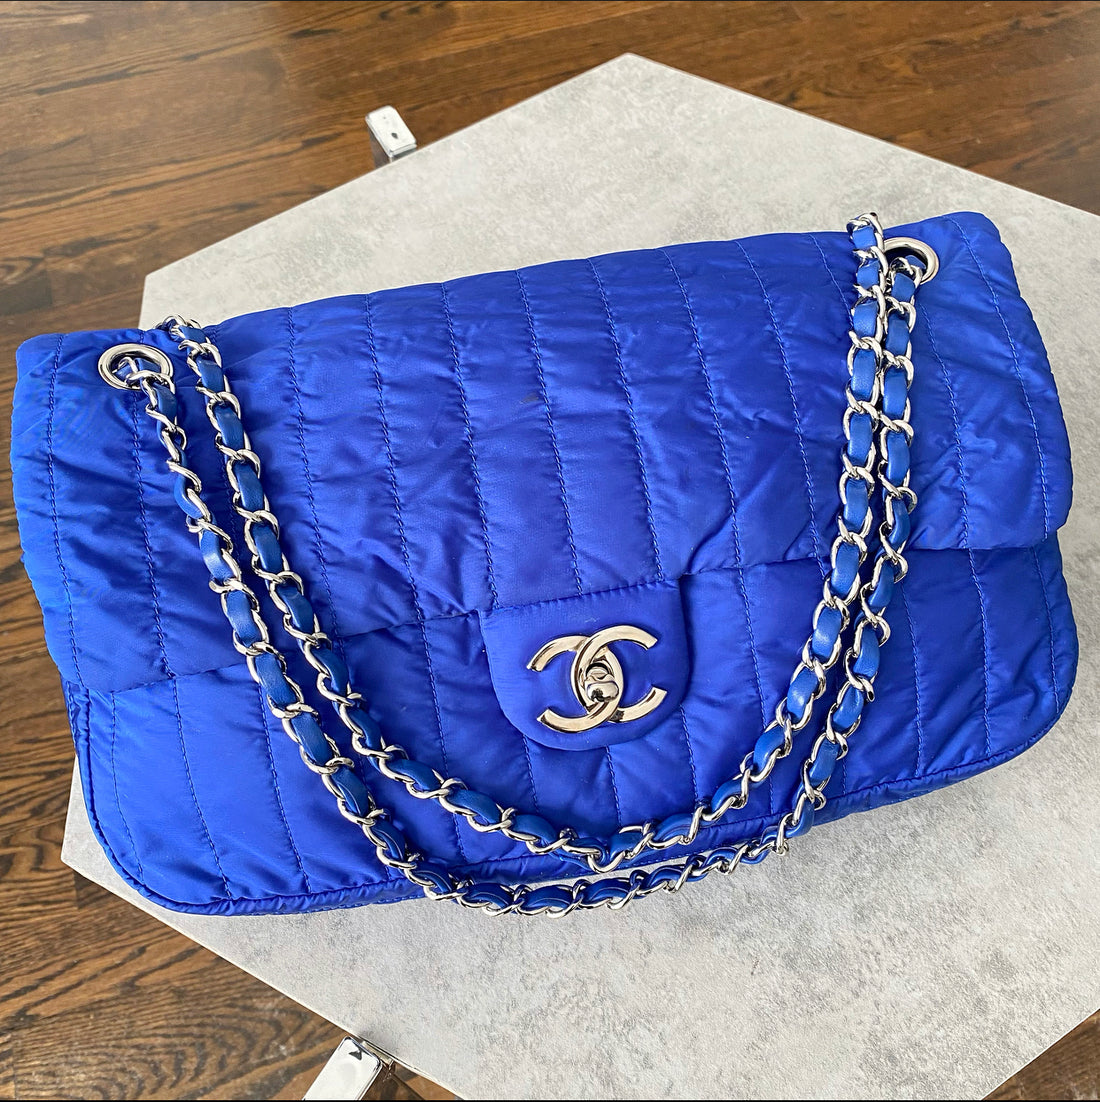 Chanel 12P Vintage Cobalt Blue Nylon Flap Bag and Pouch